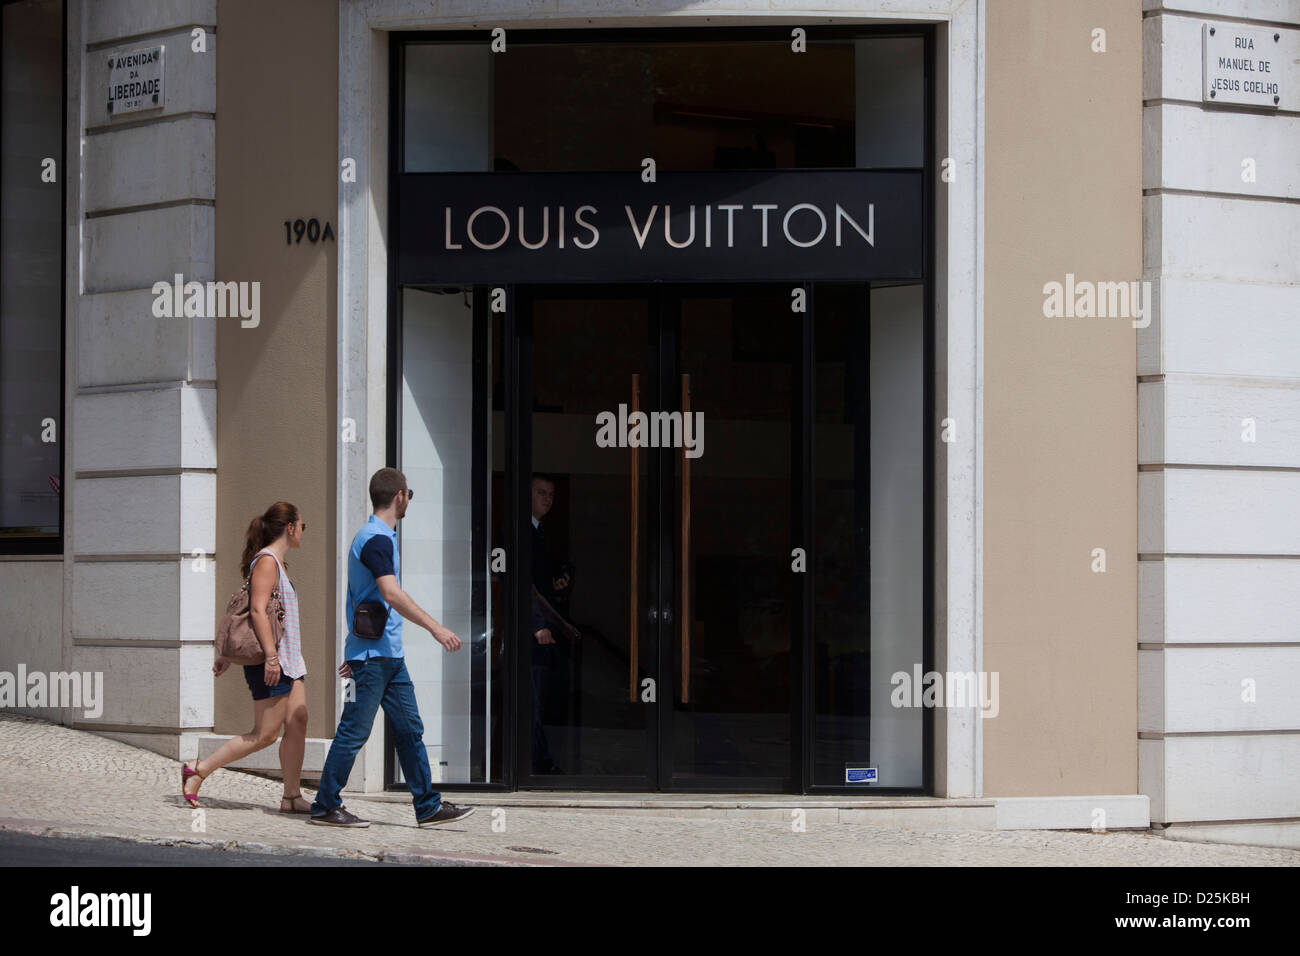 Louis Vuitton in Avenida da Liberdade, Lisbon, Portugal Stock Photo - Alamy